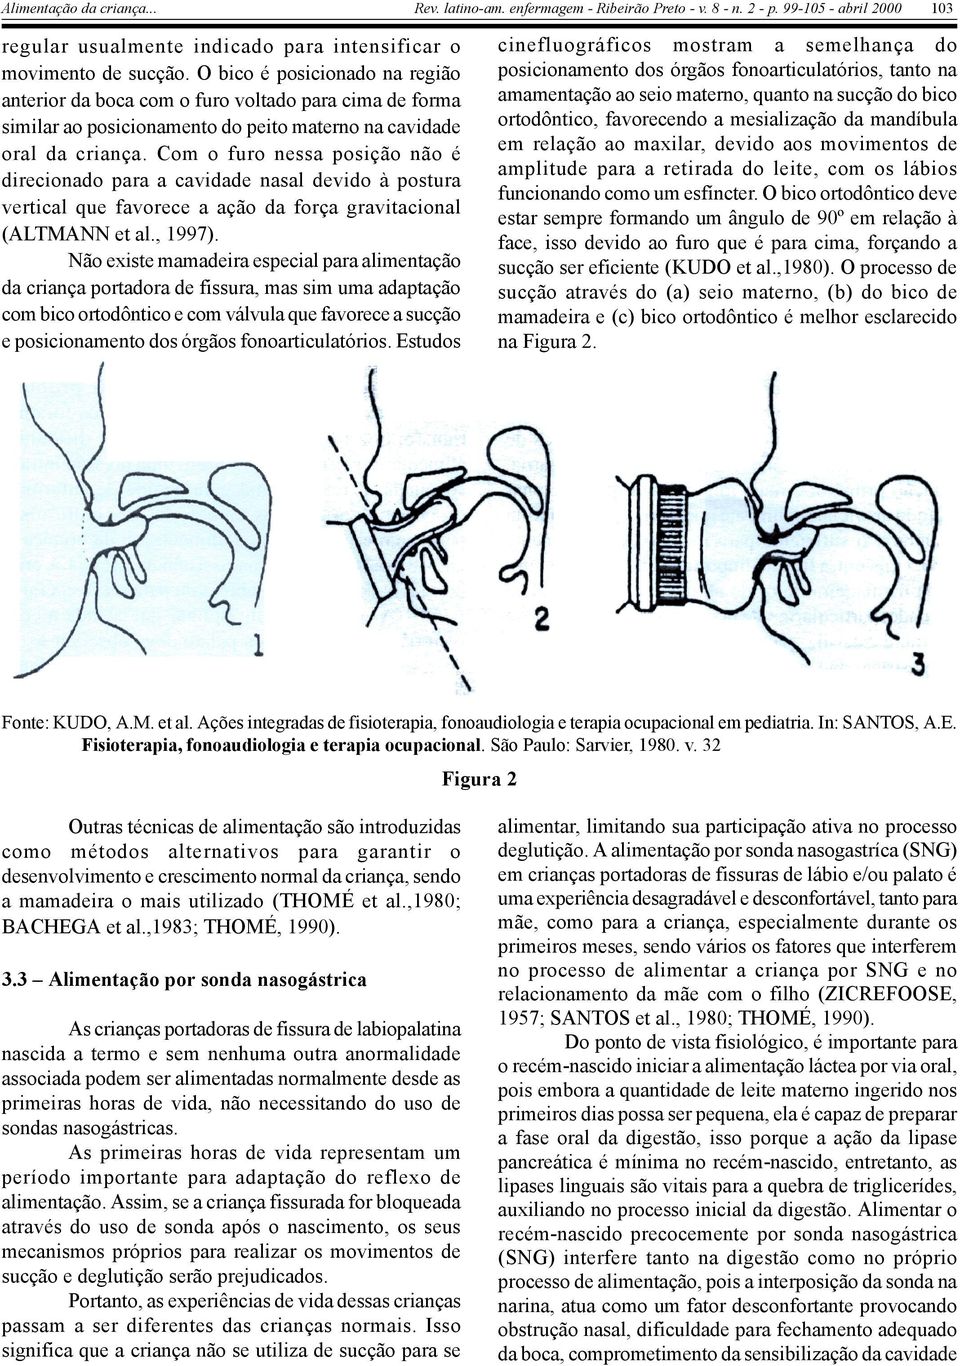 Com o furo nessa posição não é direcionado para a cavidade nasal devido à postura vertical que favorece a ação da força gravitacional (ALTMANN et al., 1997).